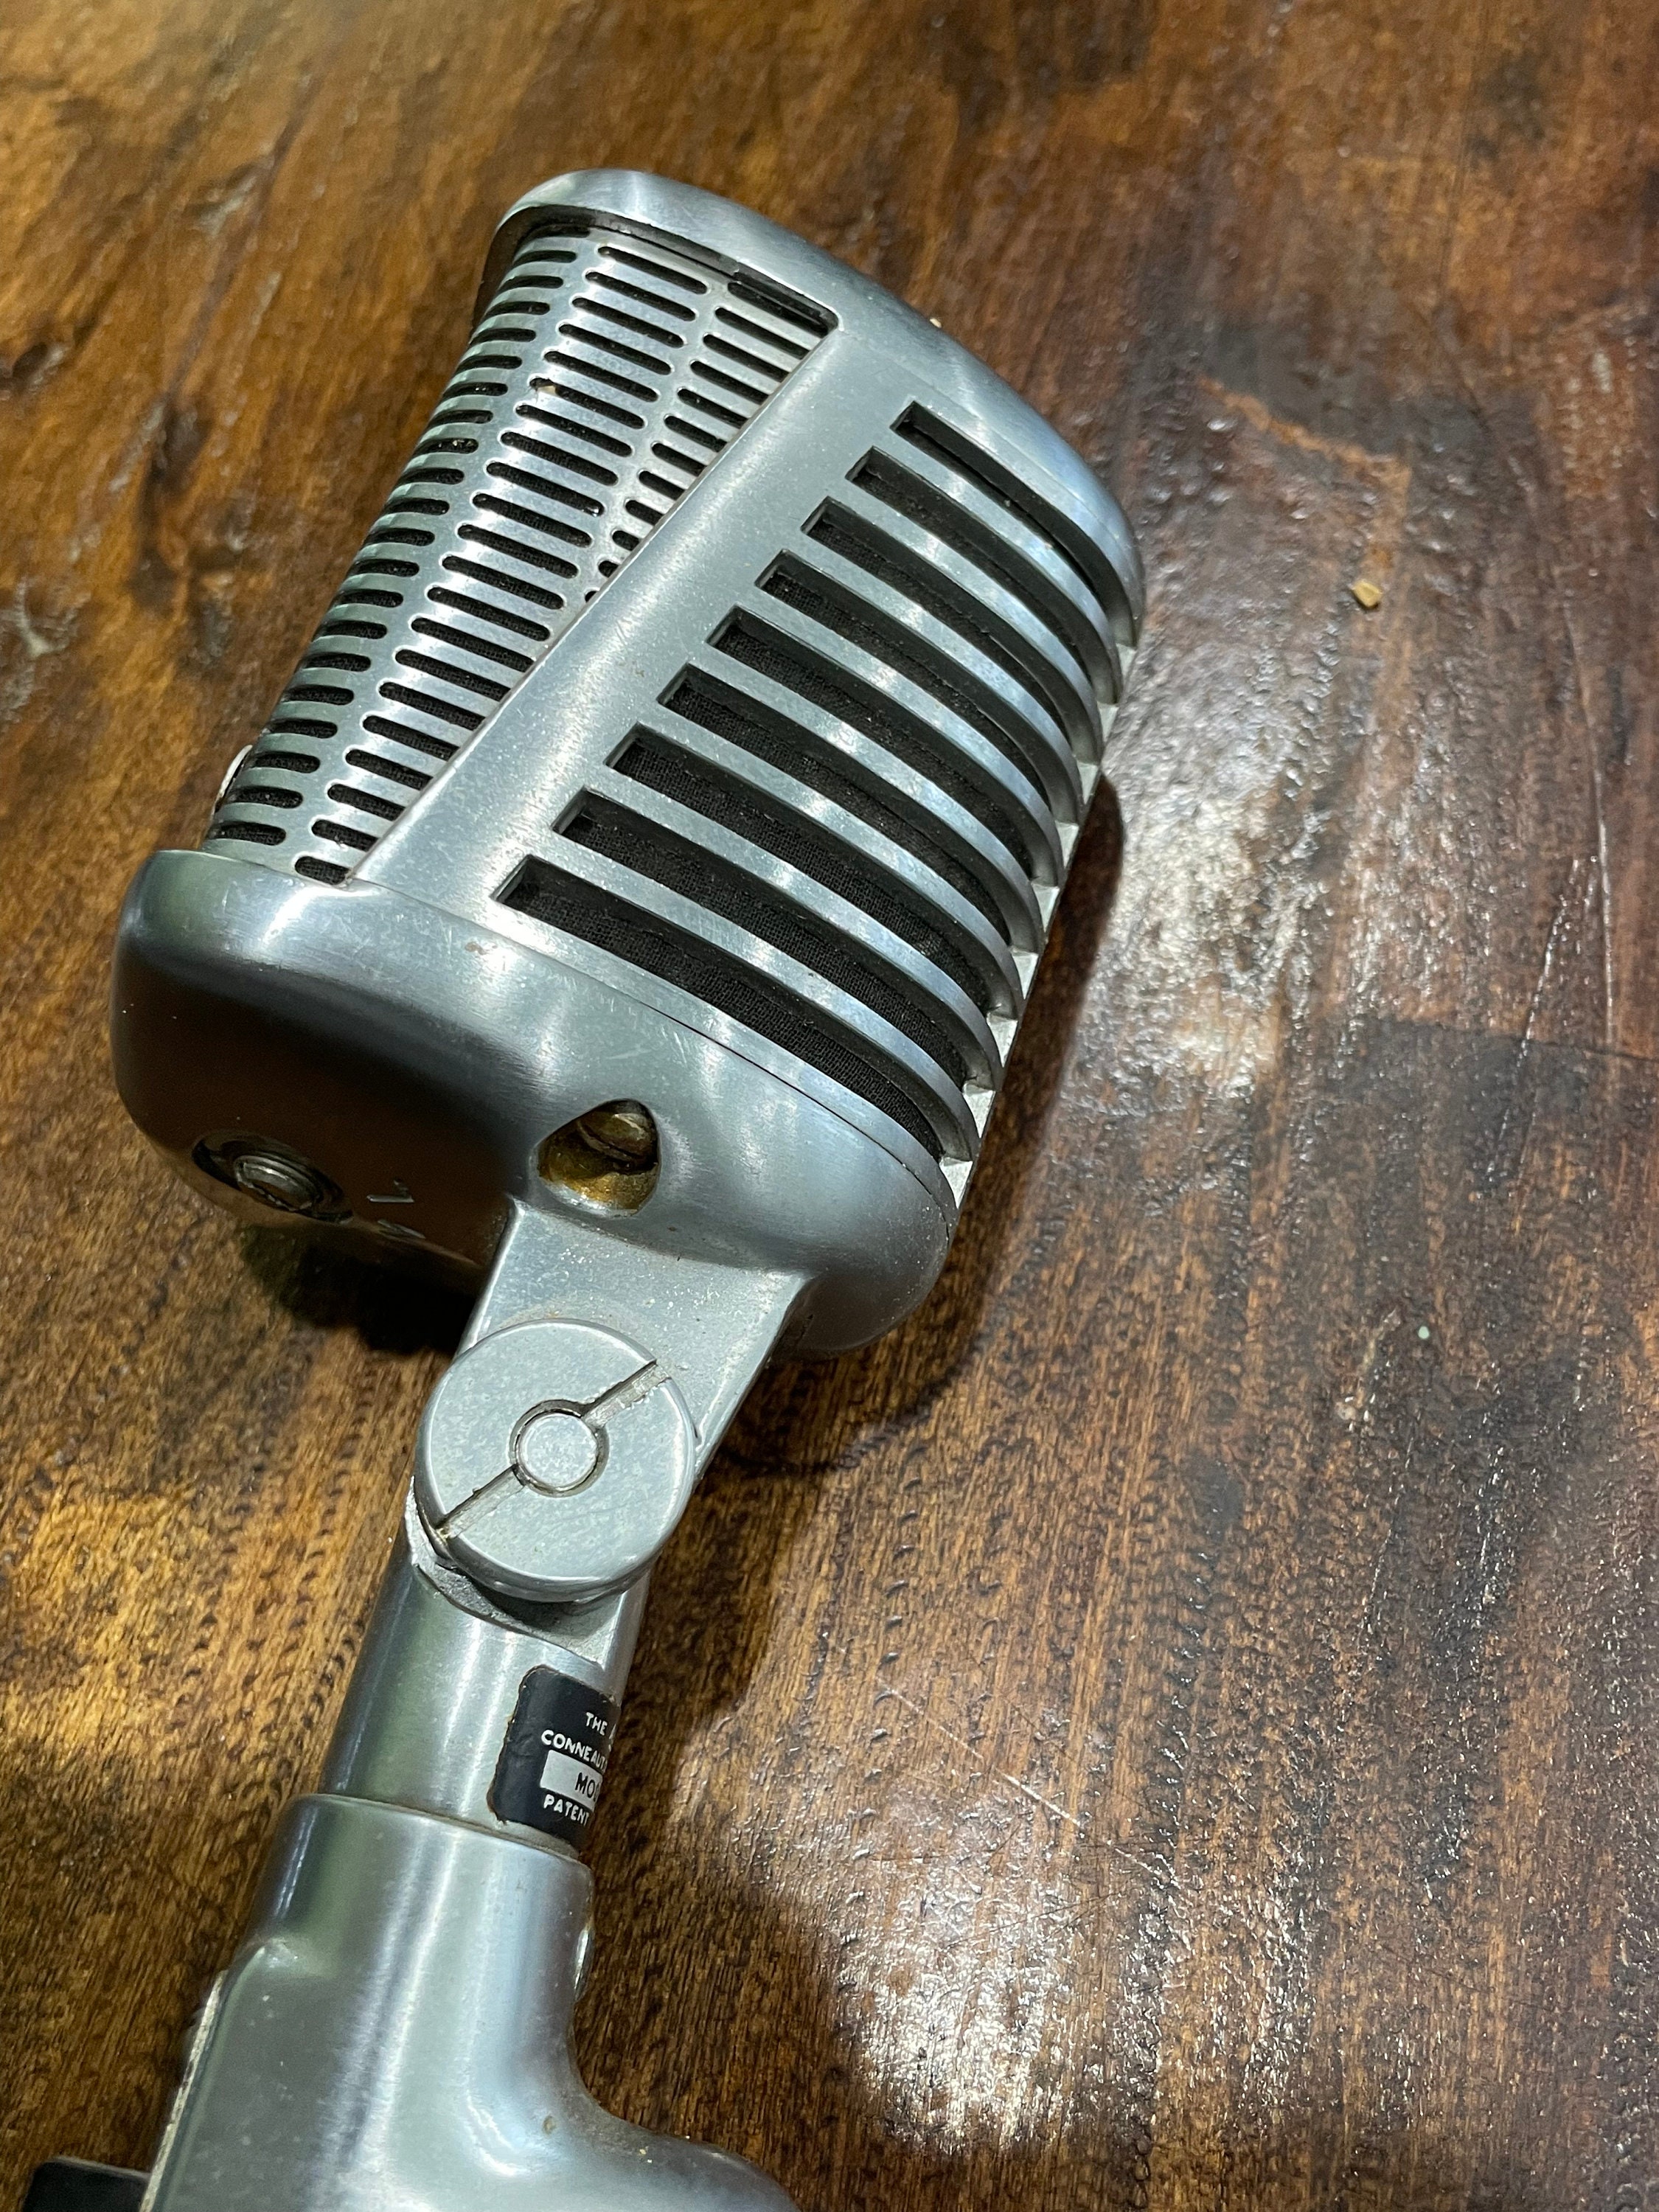 Vintage 1950's Astatic 77A Microphone Modèle n 77 avec 3 cordons à broches  -  Canada